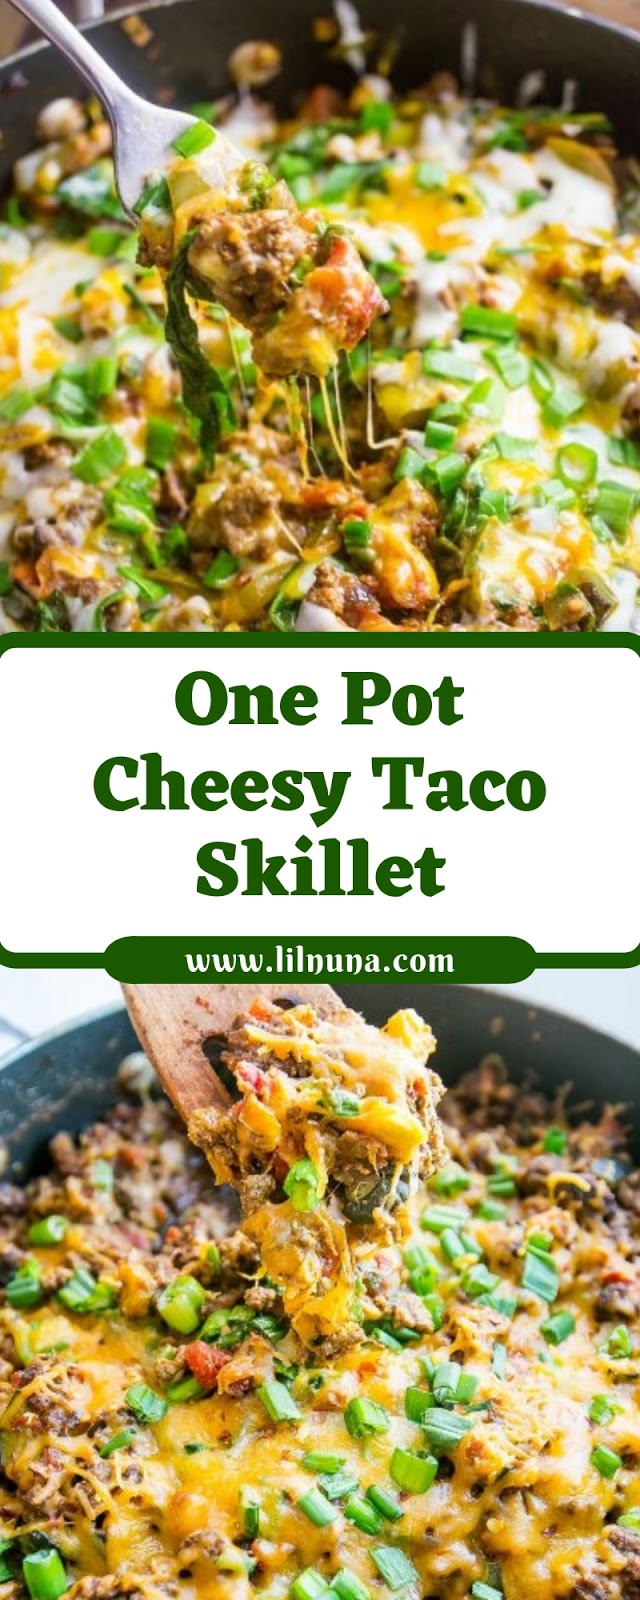 One Pot Cheesy Taco Skillet